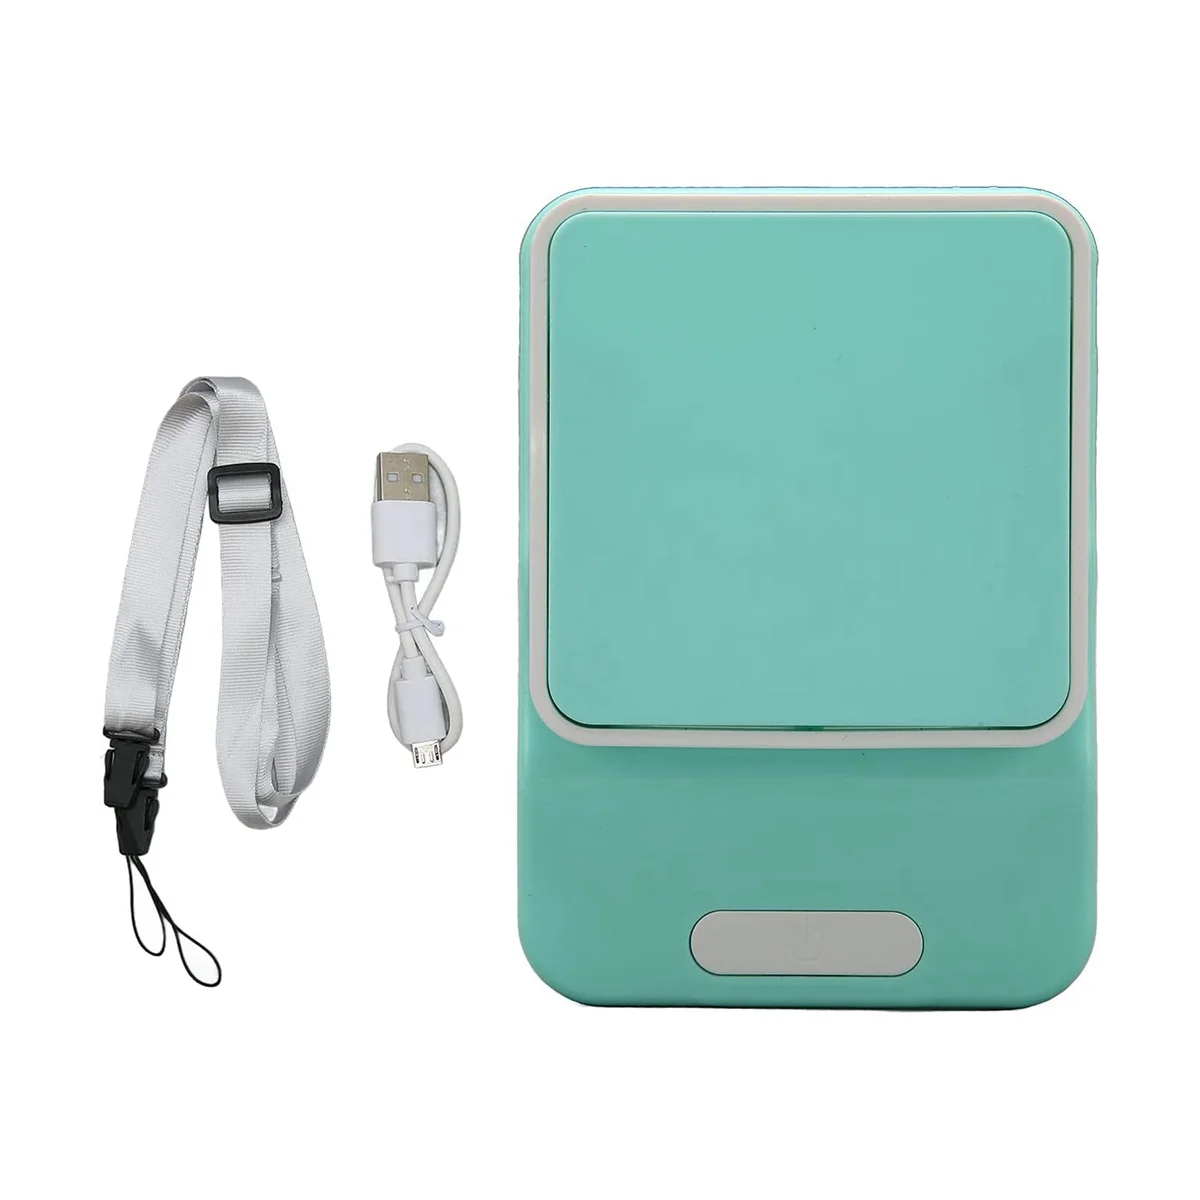 

Mini Desk Fan Portable Eyelash Fan USB Rechargeable Quiet Electric Cooling Fan